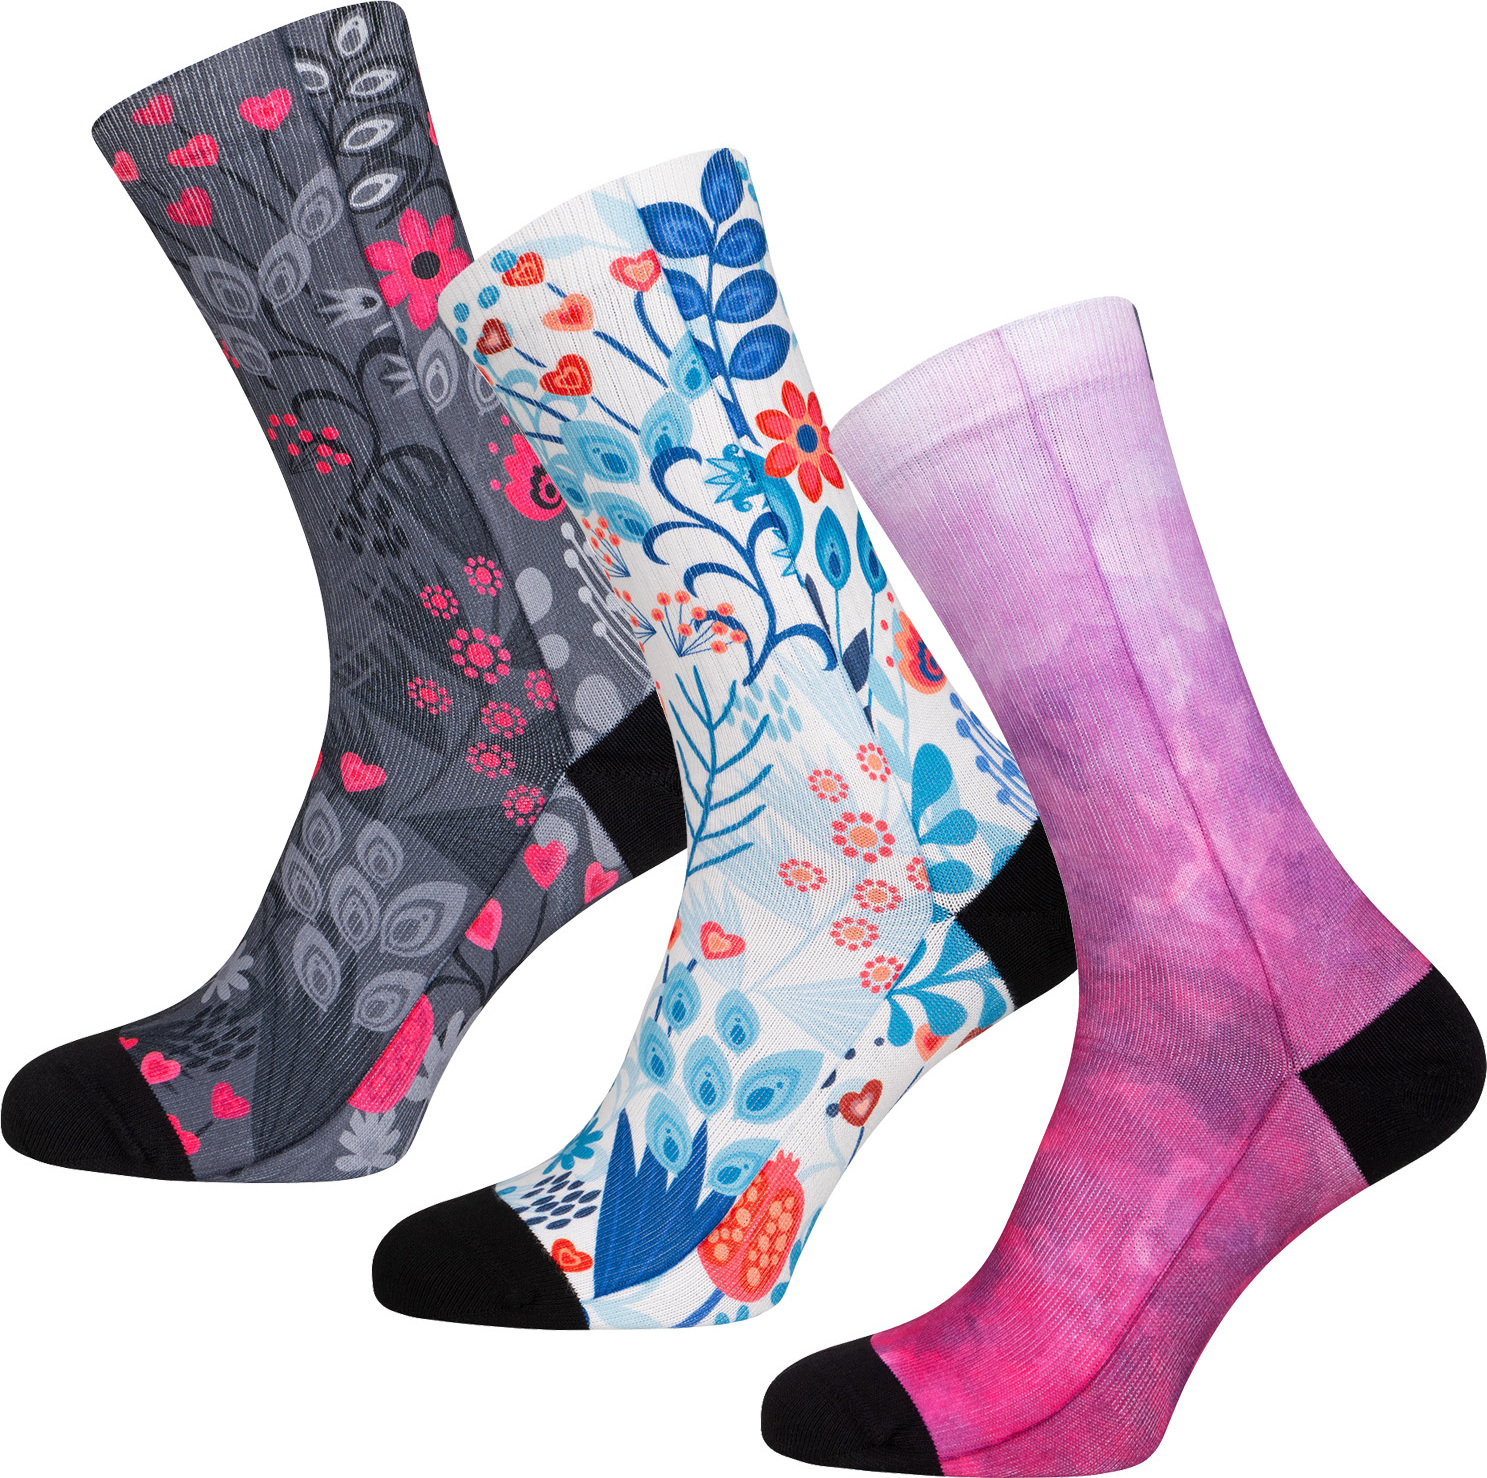 Ponožky ELEVEN Nina 3 pack MMC barevné Velikost: L-XL (42 - 45)